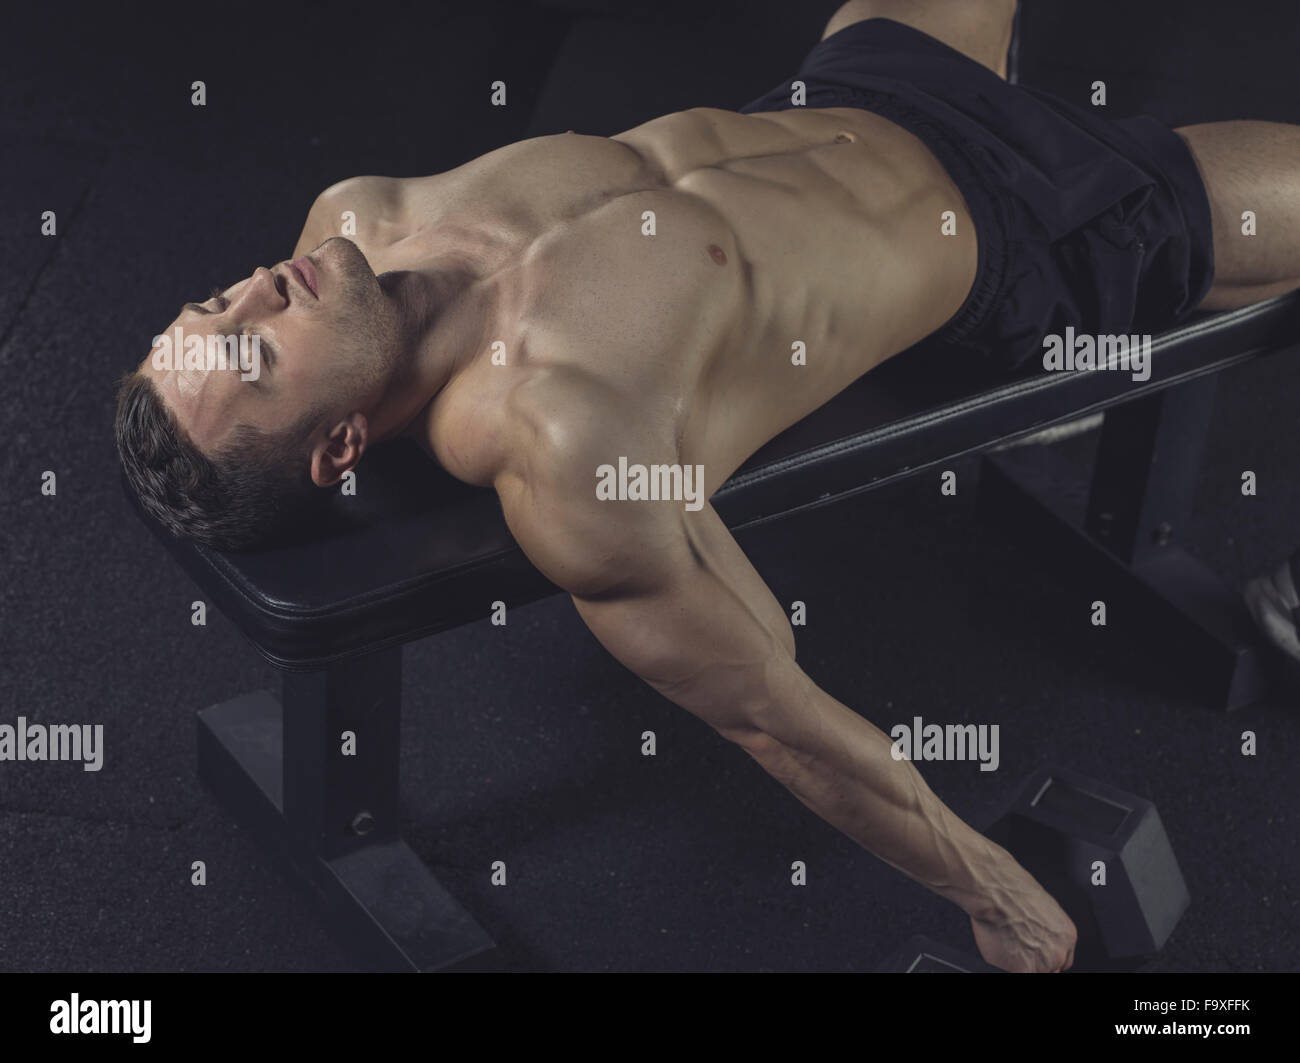 Physical athlete lying on gym machine Stock Photo